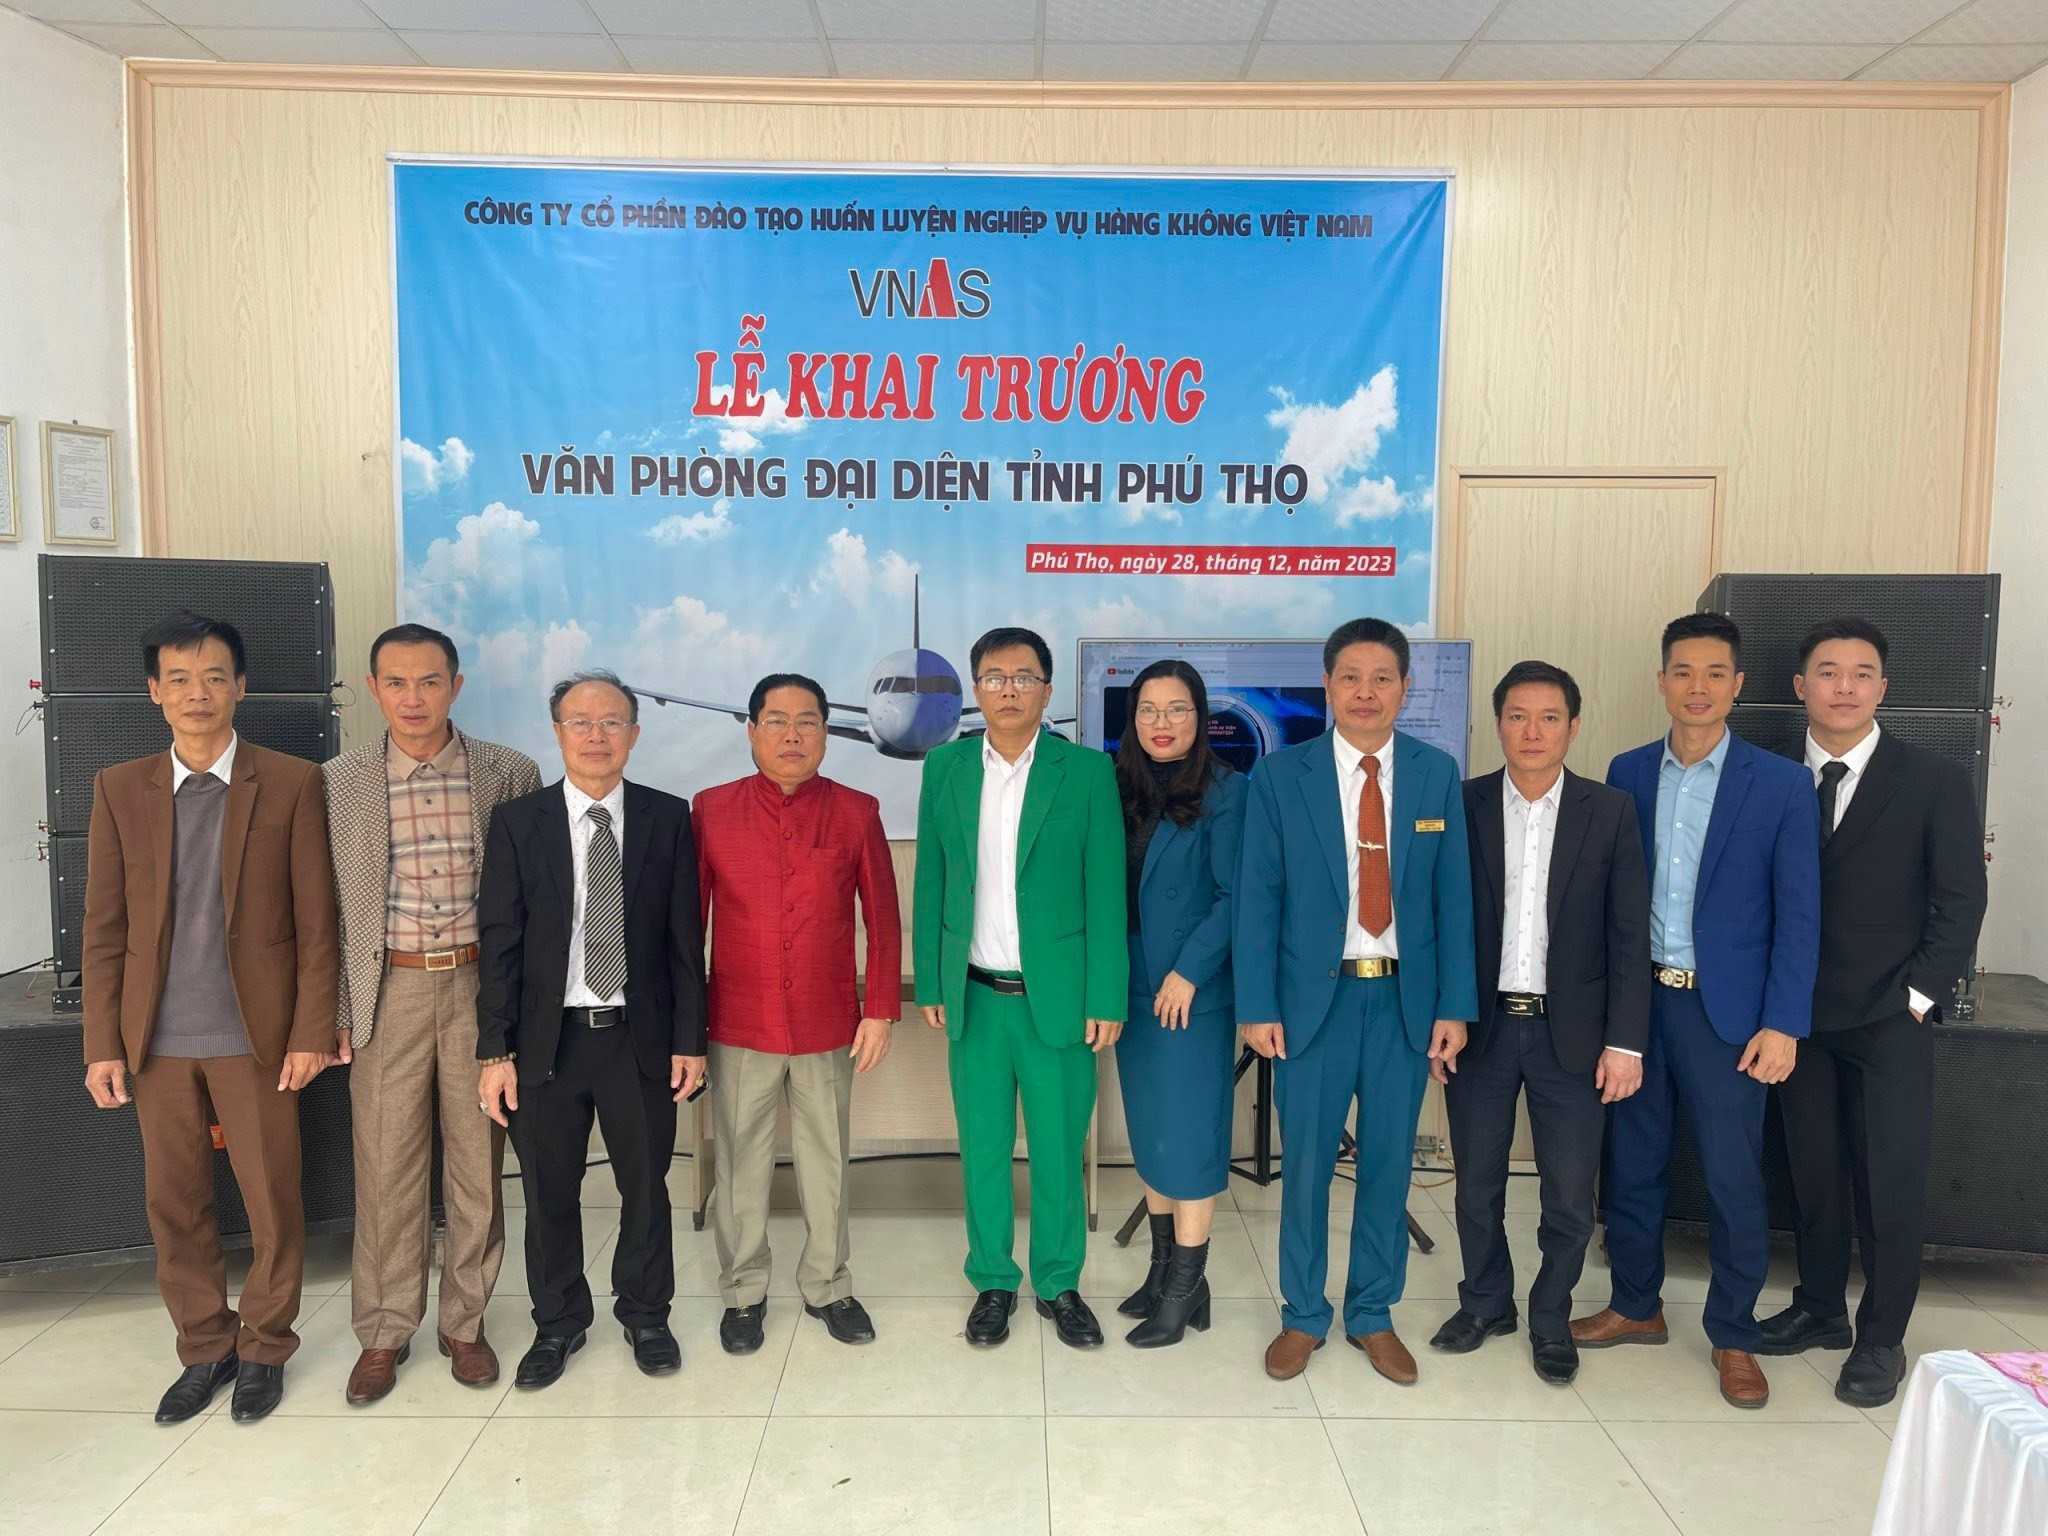 TVNAS khai trương Văn phòng đại diện tại Phú Thọ